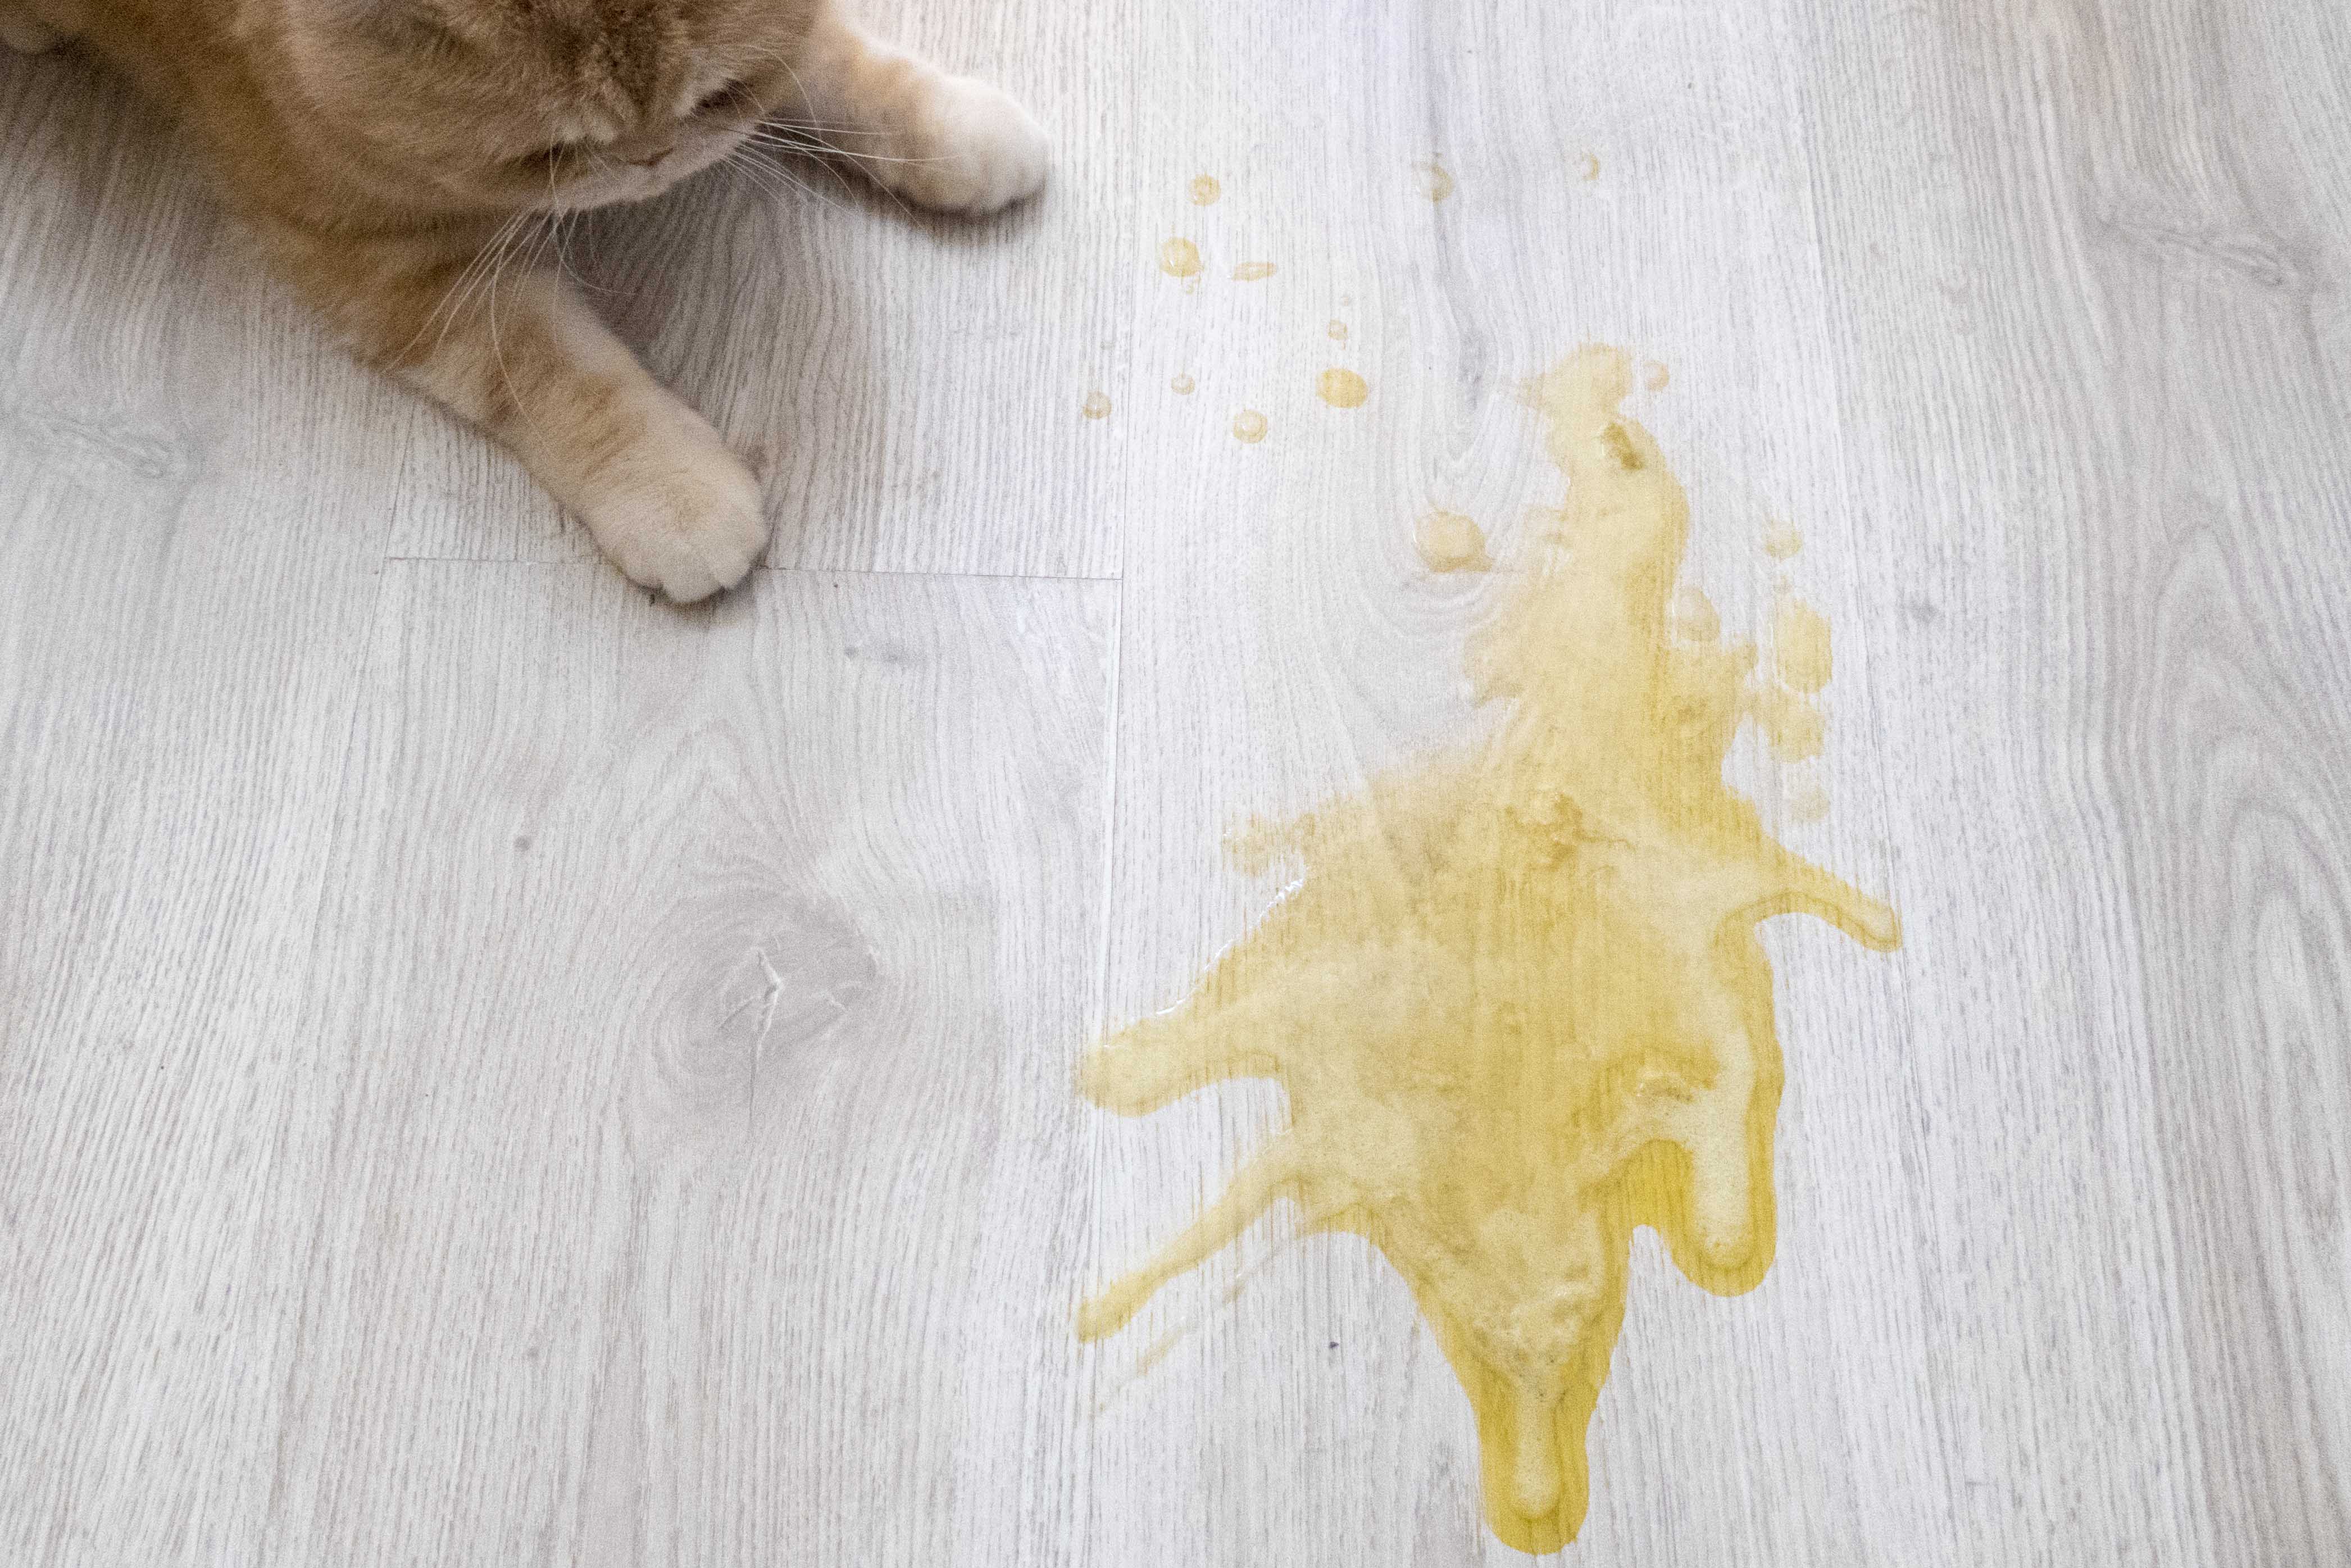 Цвет рвоты у кошки. Кот рыгнул желтой жидкостью. Кошку стошнило желтой жидкостью. Кошку вытошнило желтым.